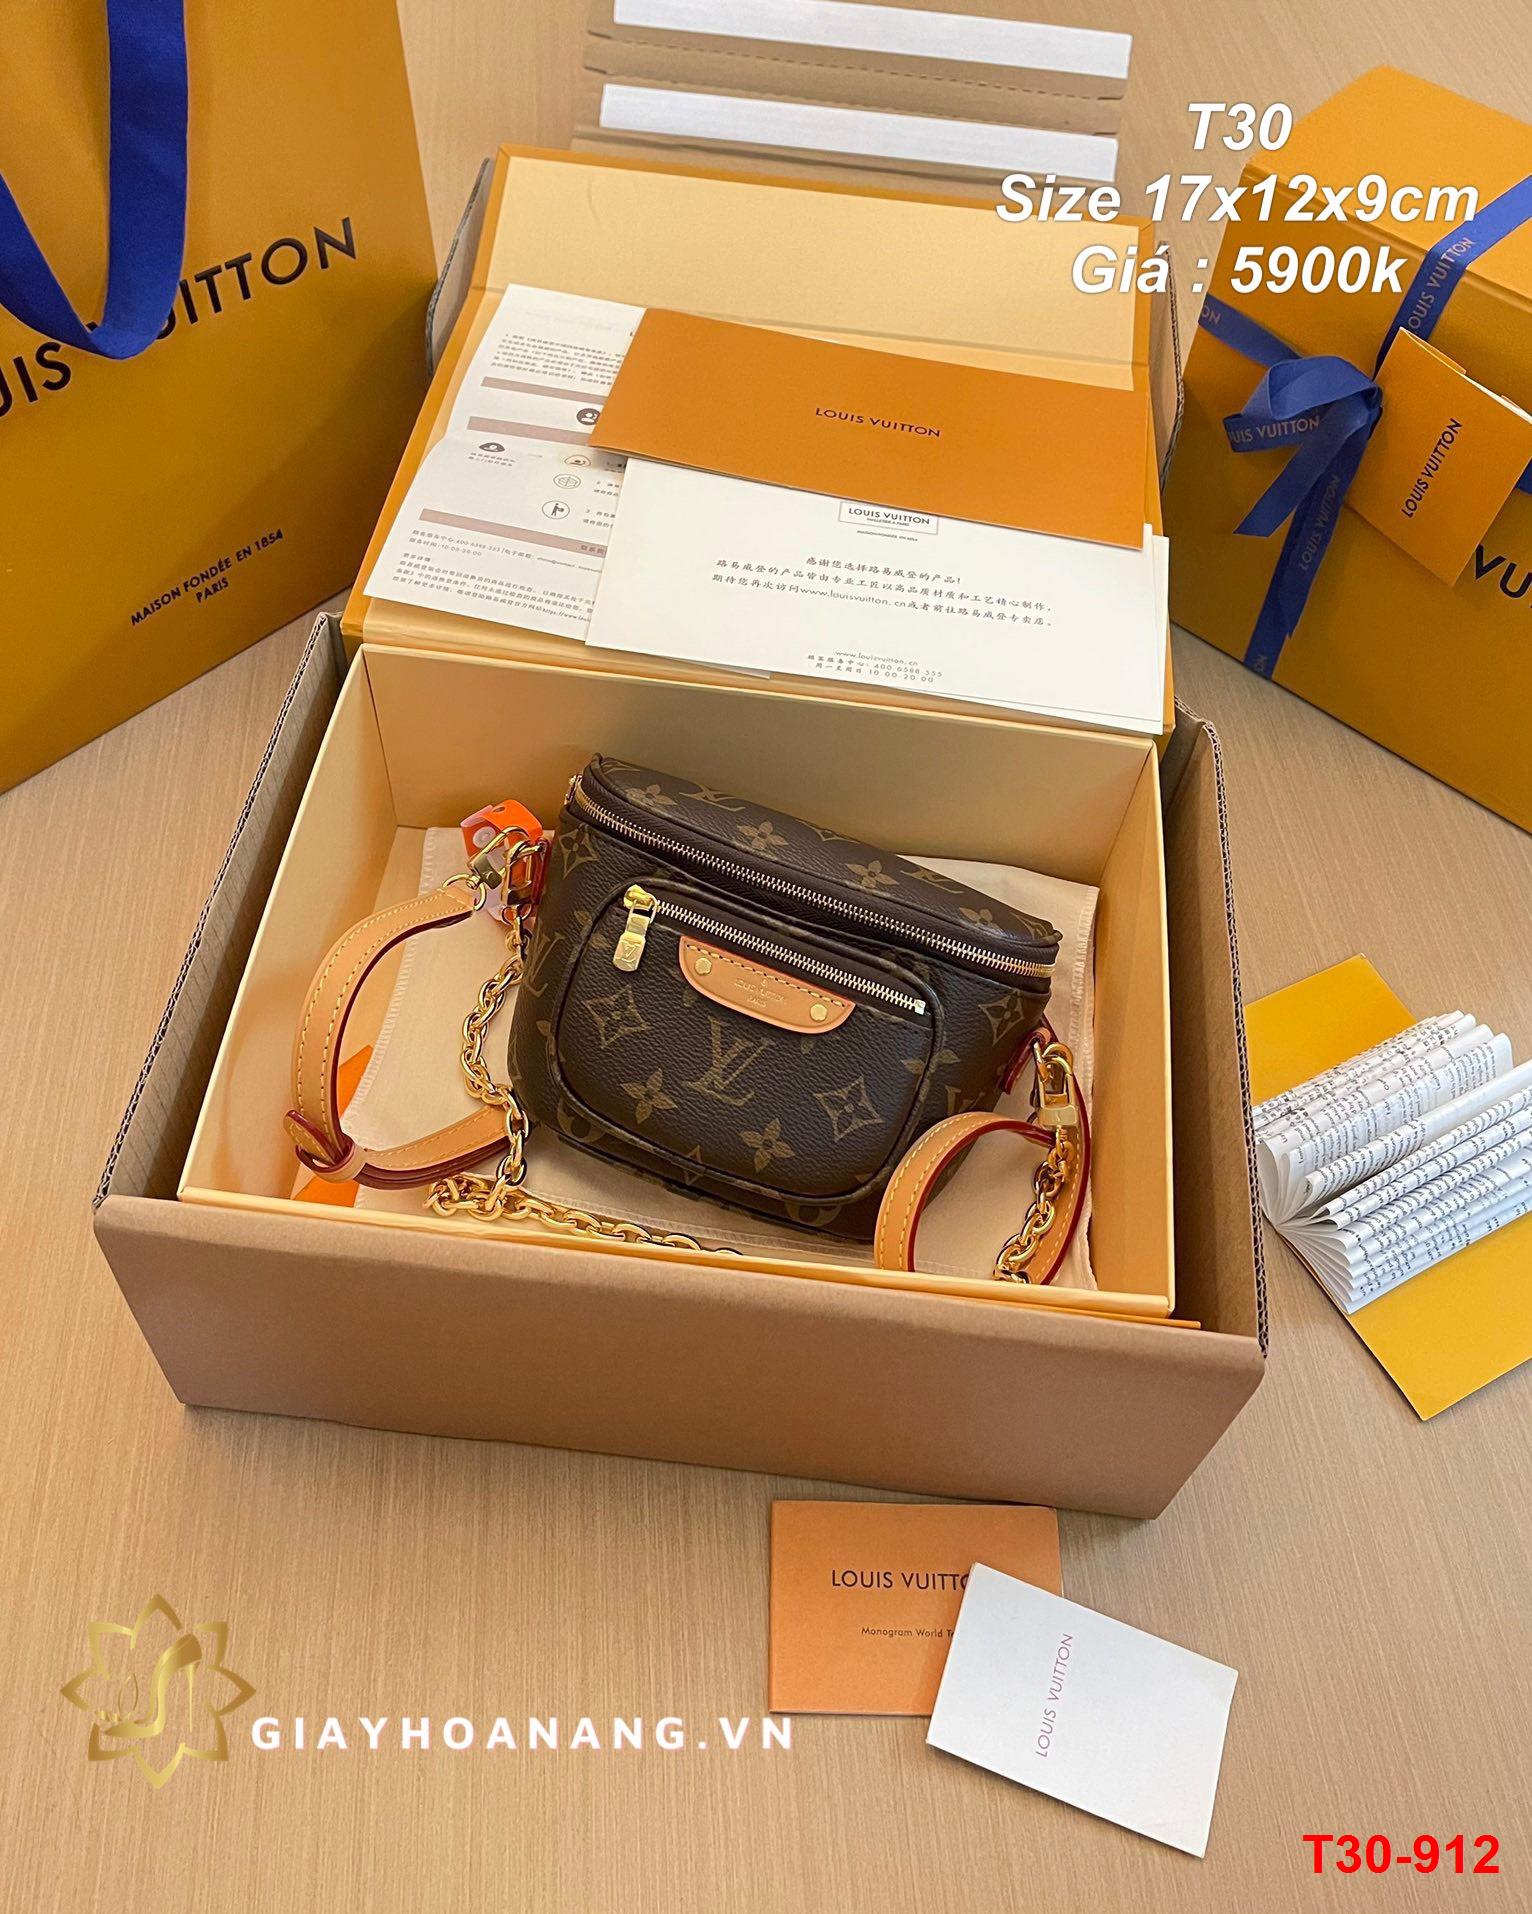 T30-912 Louis Vuitton túi size 17cm siêu cấp